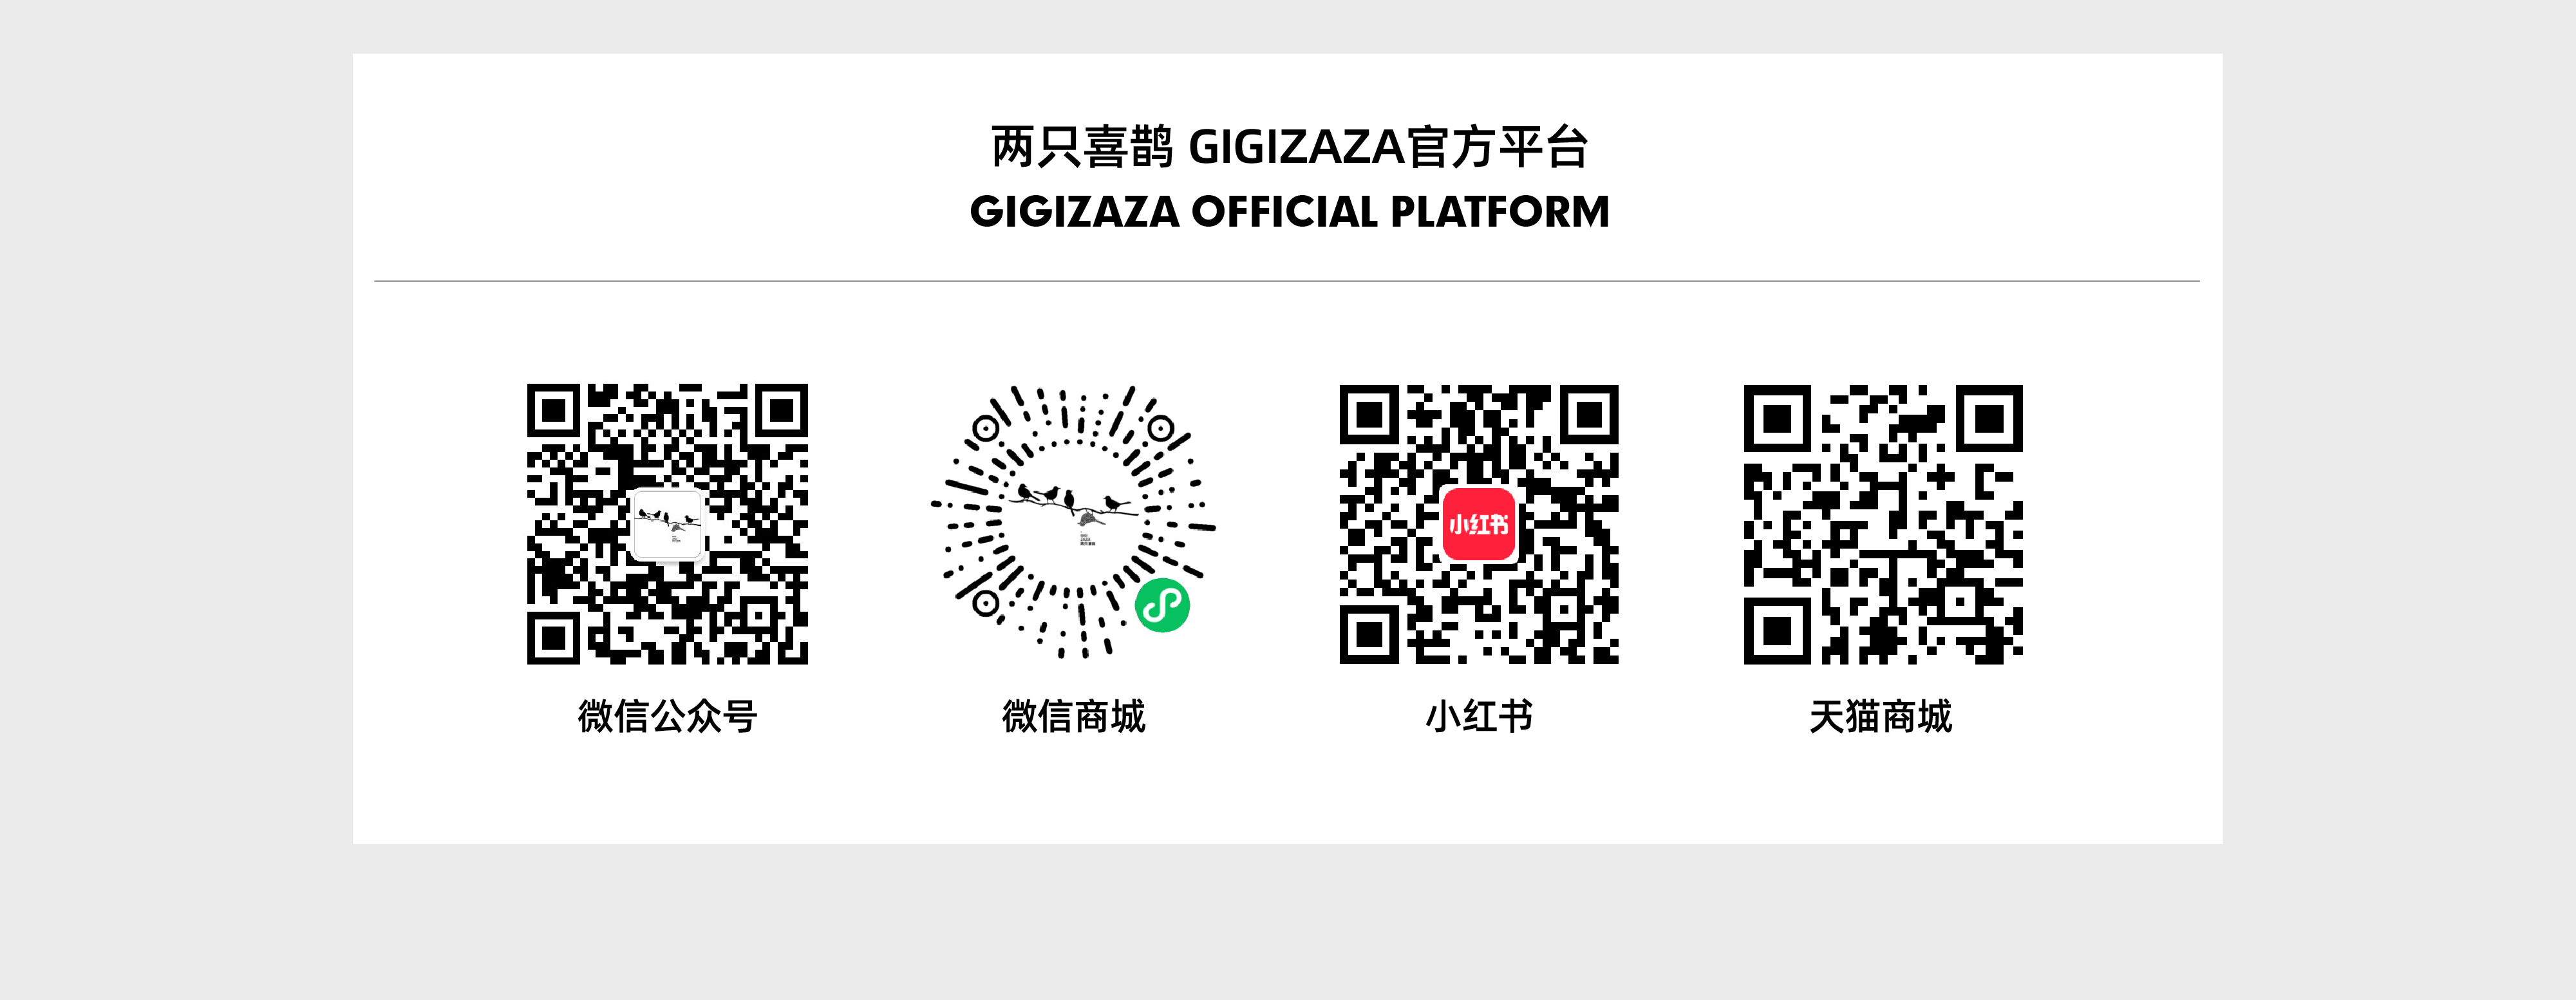 GIGIZAZA两只喜鹊官方页面-ok_画板-1_07.jpg